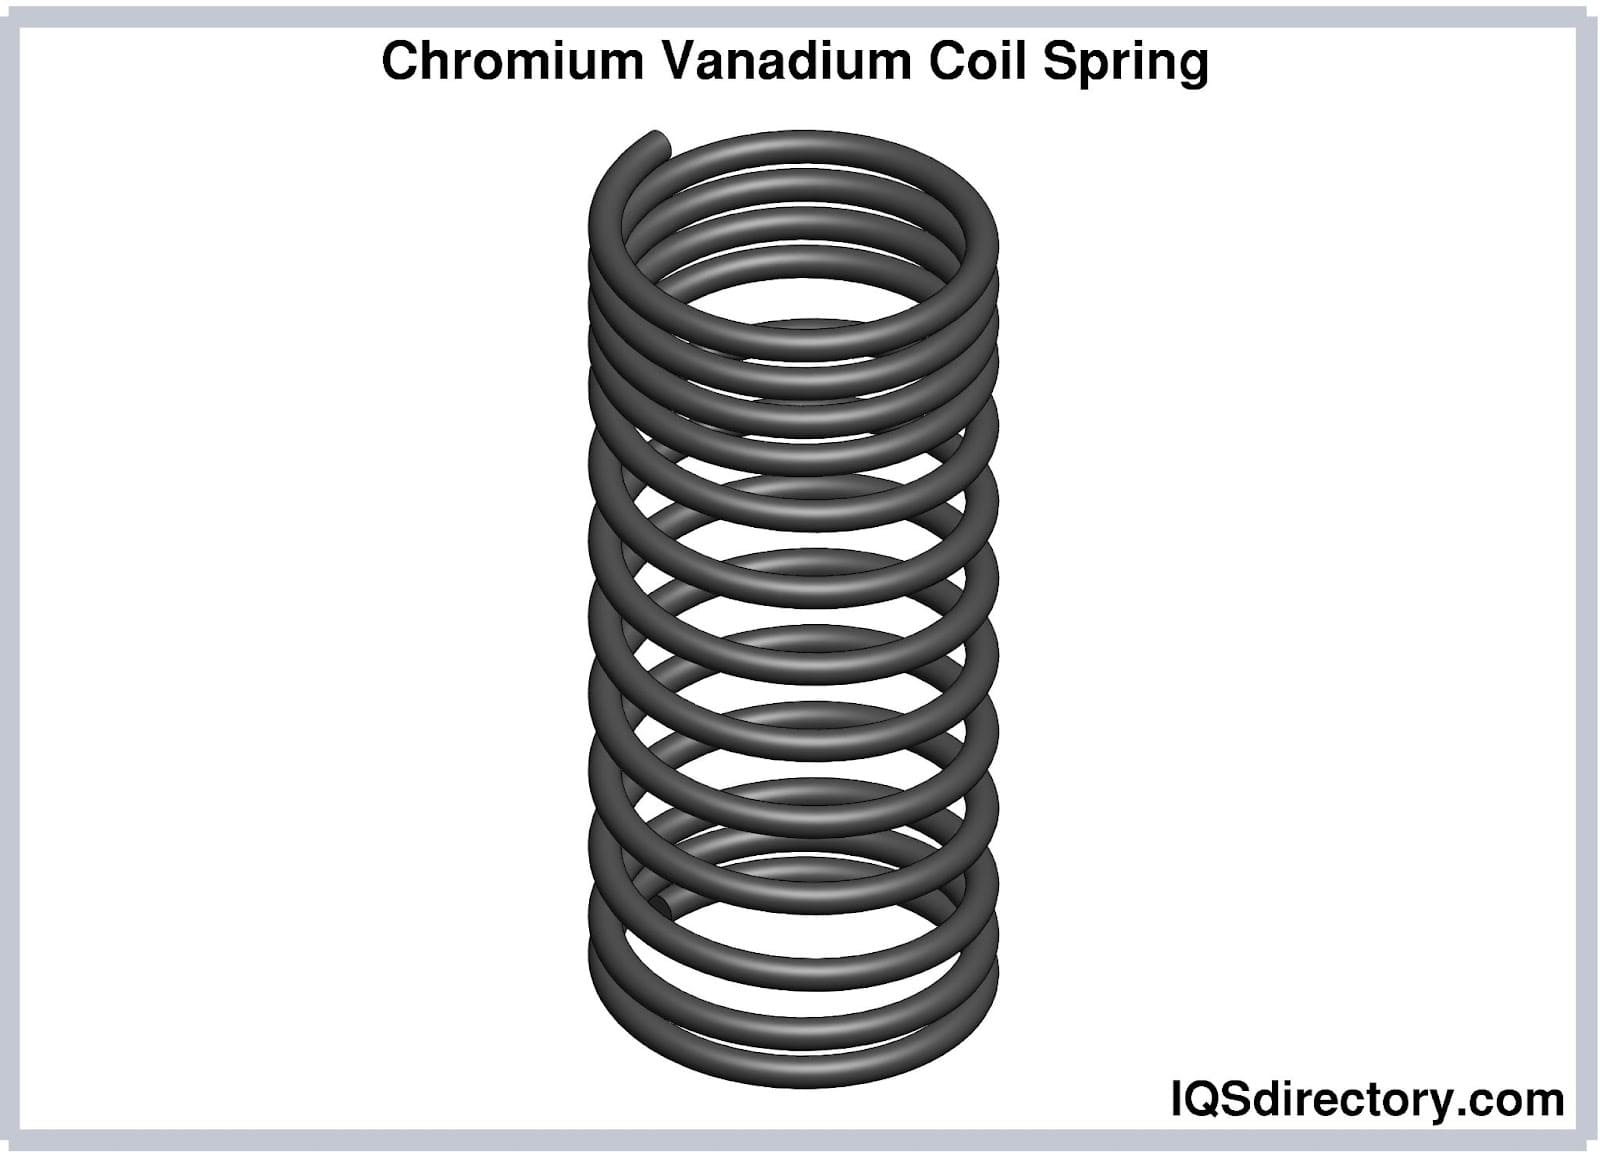 Chromium Vanadium Coil Spring